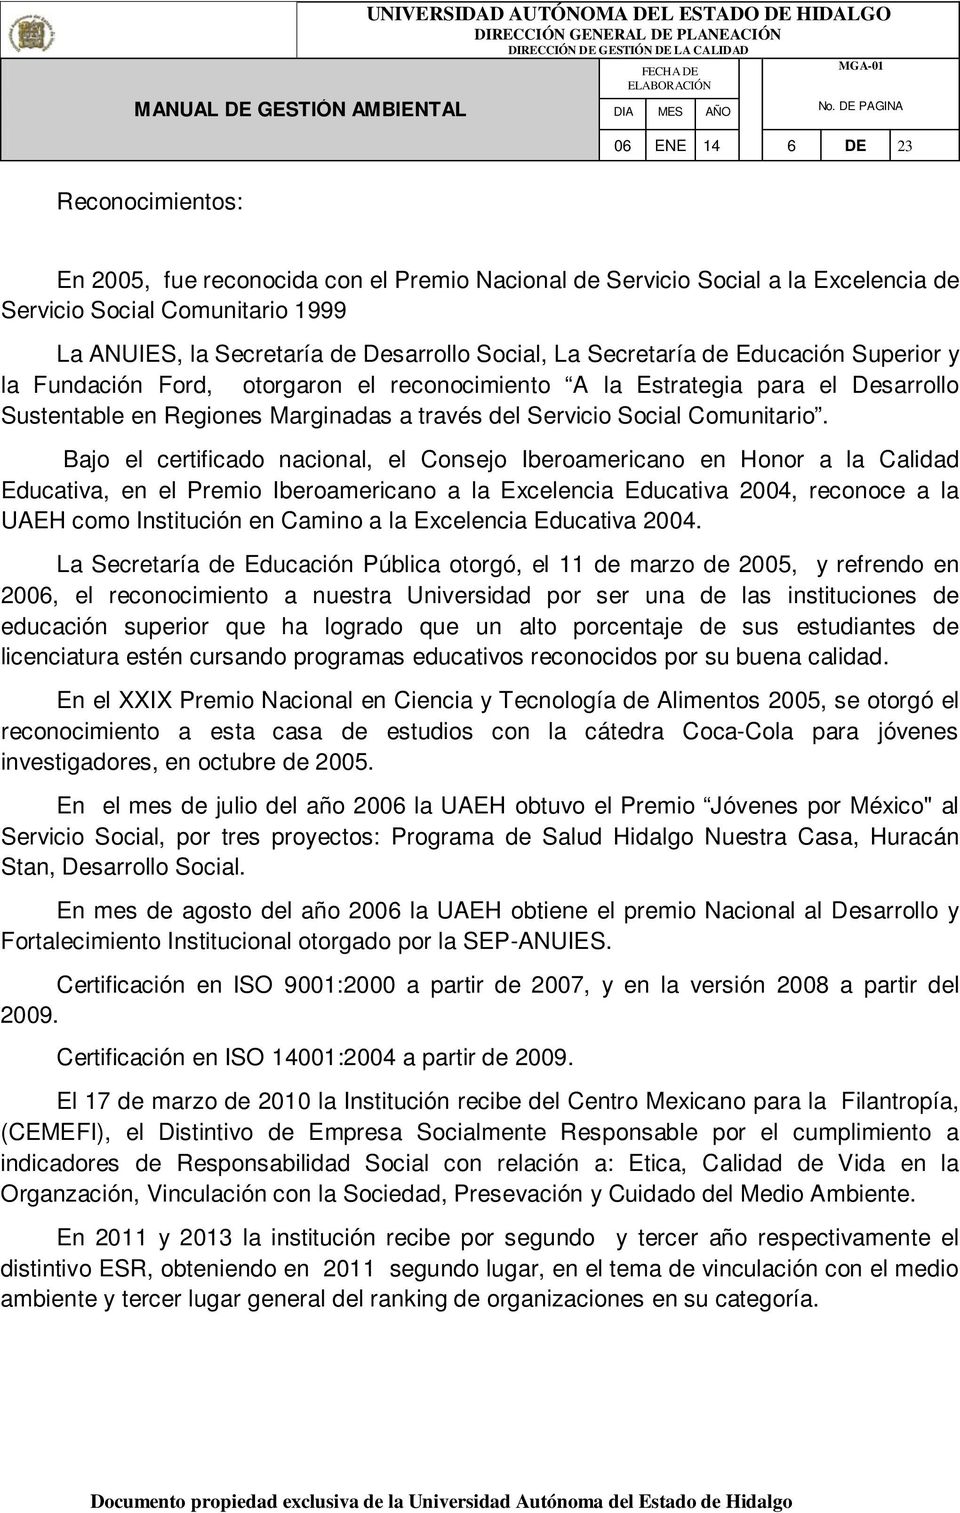 Bajo el certificado nacional, el Consejo Iberoamericano en Honor a la Calidad Educativa, en el Premio Iberoamericano a la Excelencia Educativa 2004, reconoce a la UAEH como Institución en Camino a la